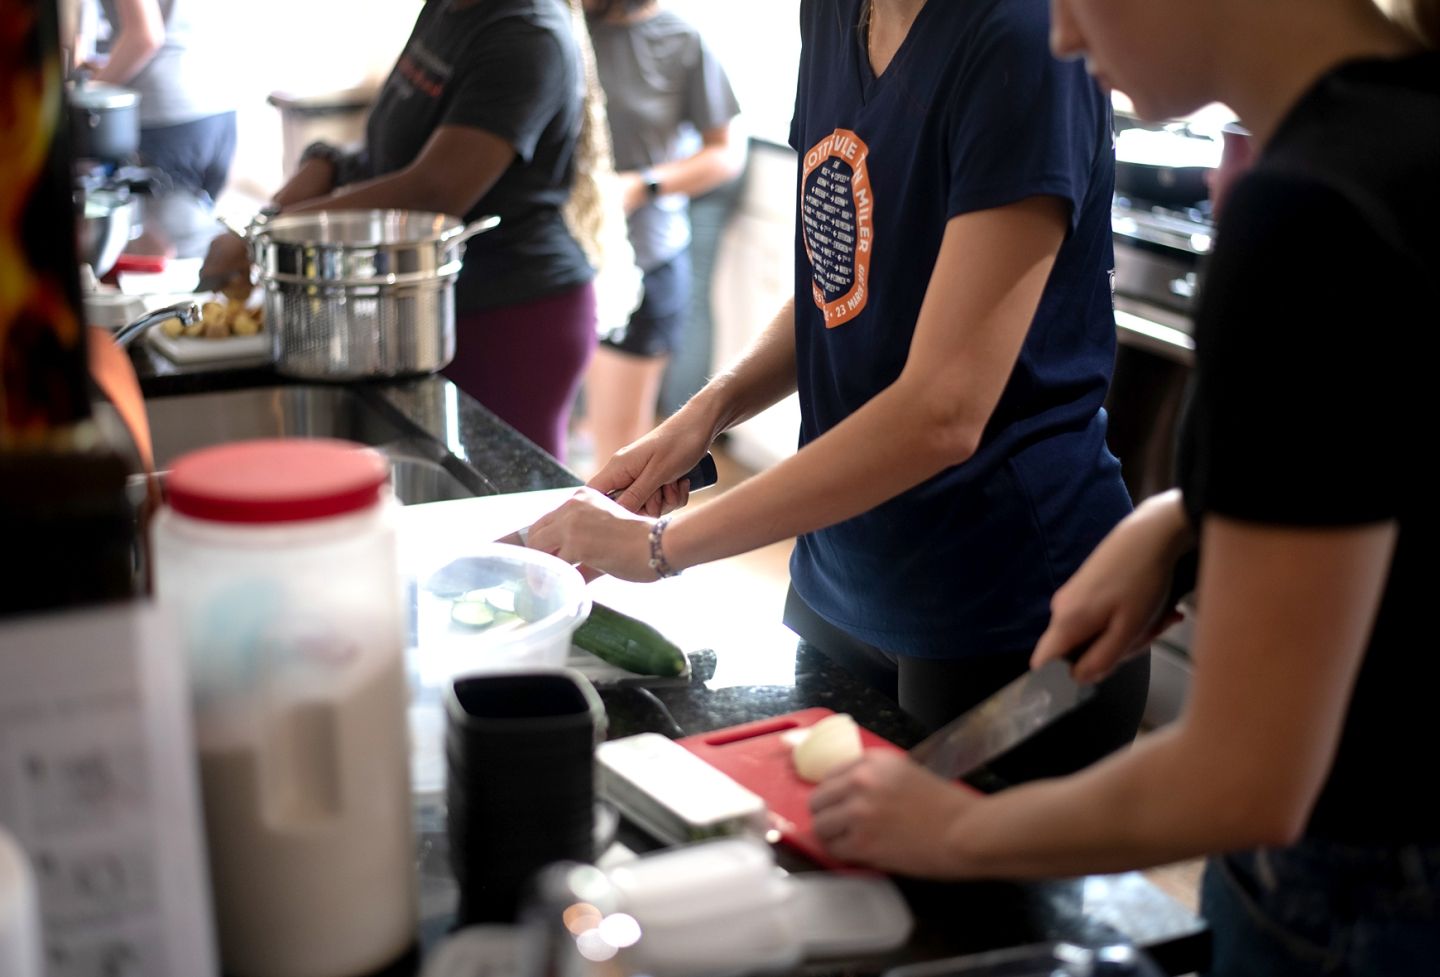 Students preparing food